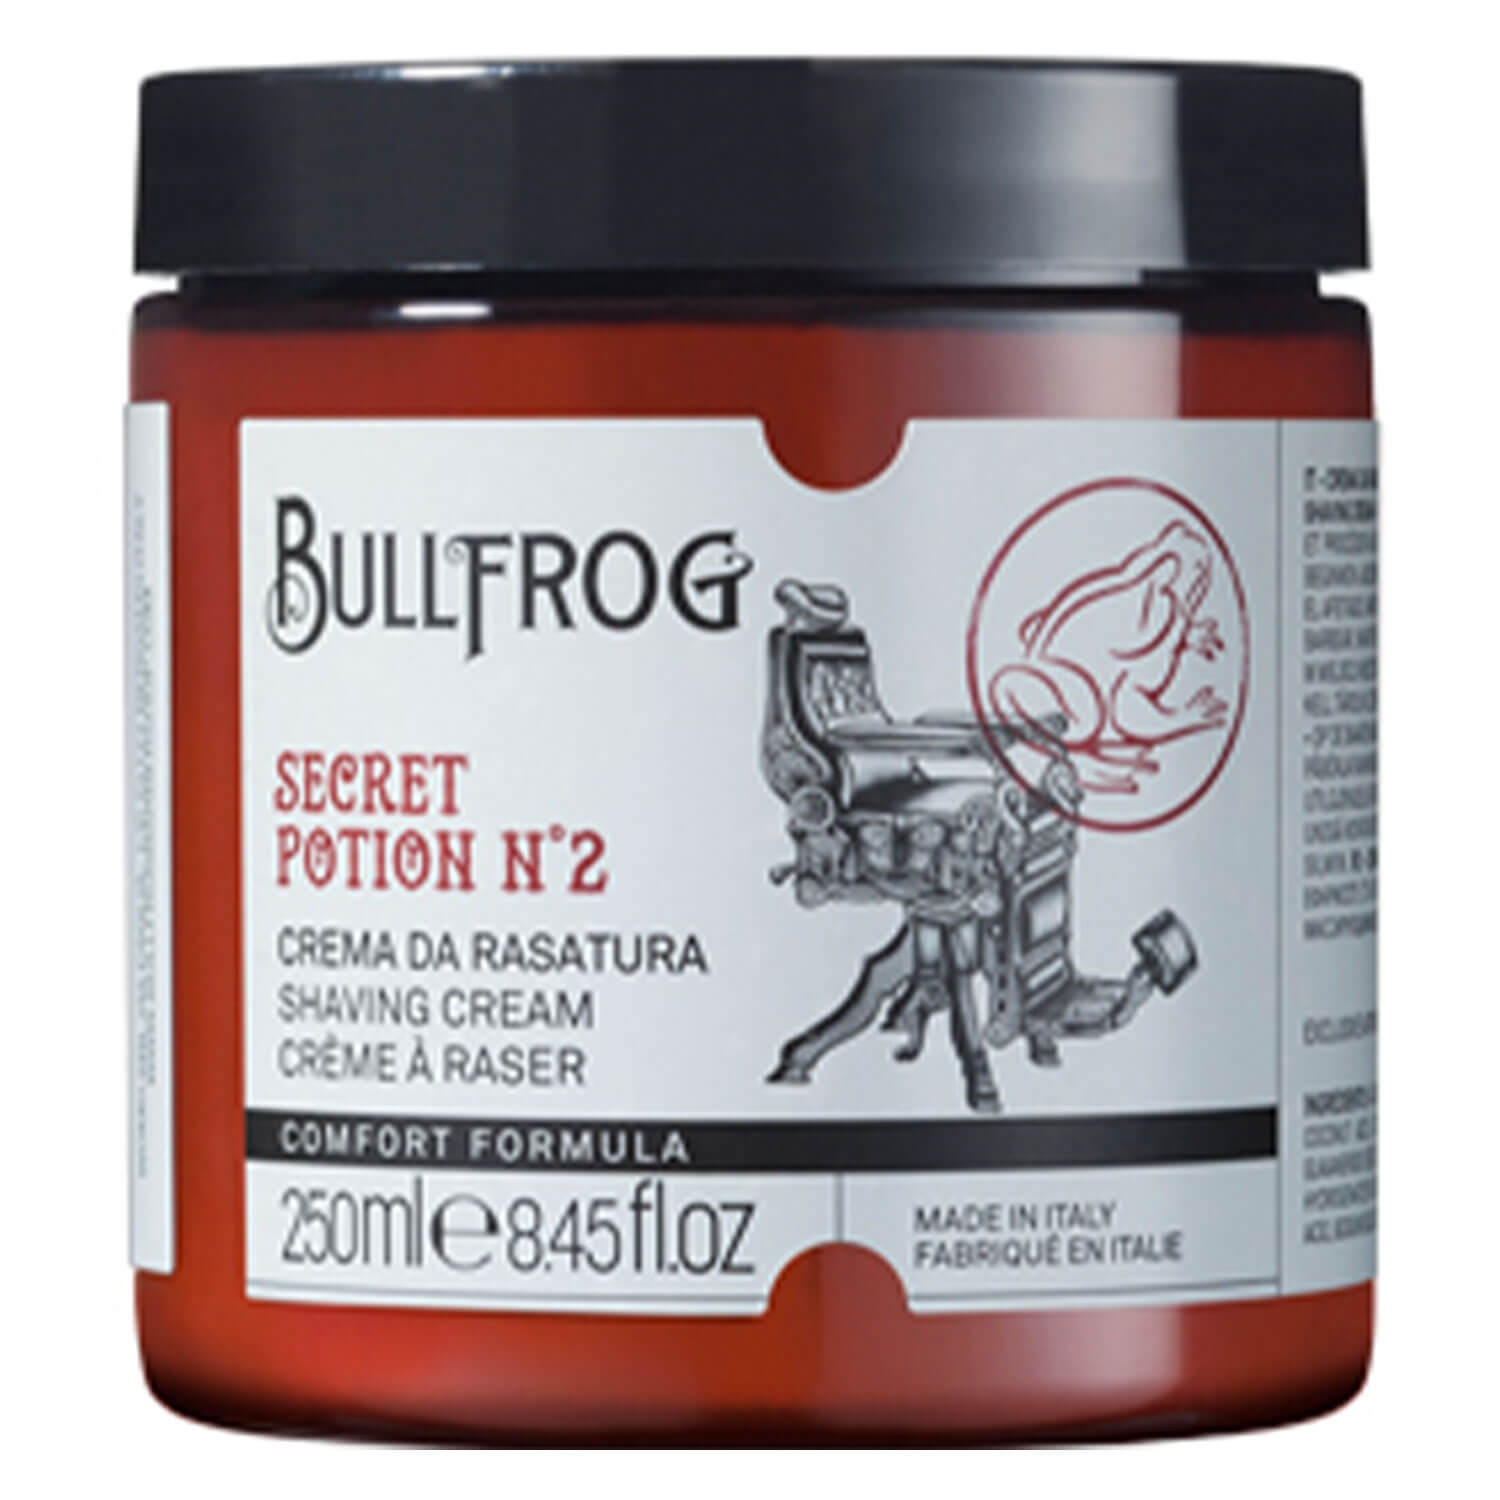 Product image from BULLFROG - Shaving Cream Secret Potion N°2